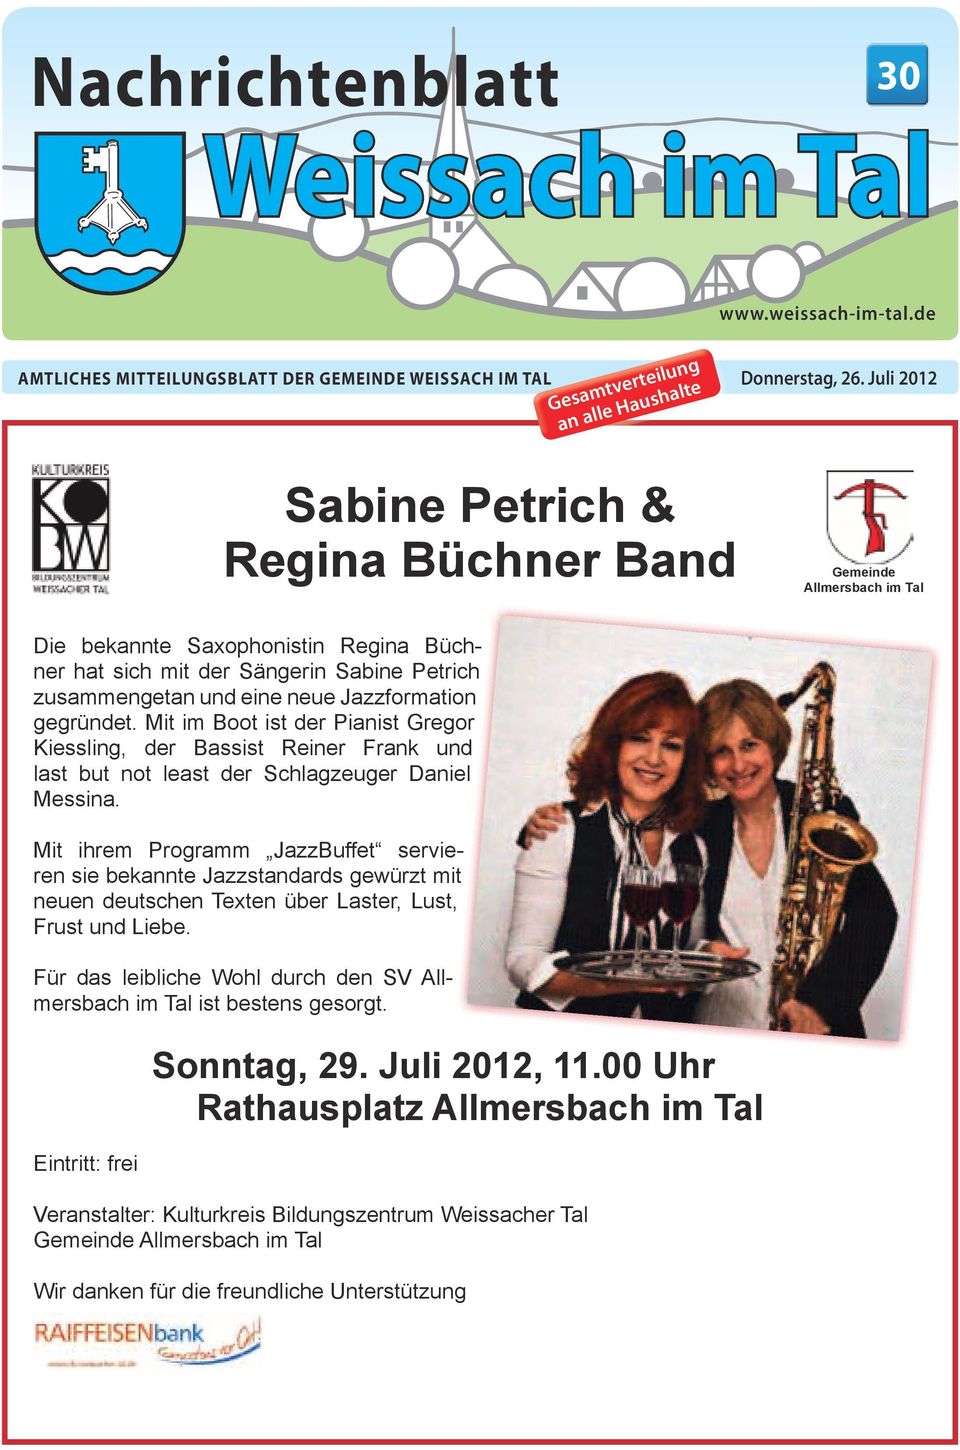 hat sich mit der Sängerin Sabine Gemeinde Petrich Vorankündigung zusammengetan Sabine und eine Petrich neue Jazzformation Allmersbach & Regina im Tal Büchner Sabine Petrich & Regina Büchner gegründet.